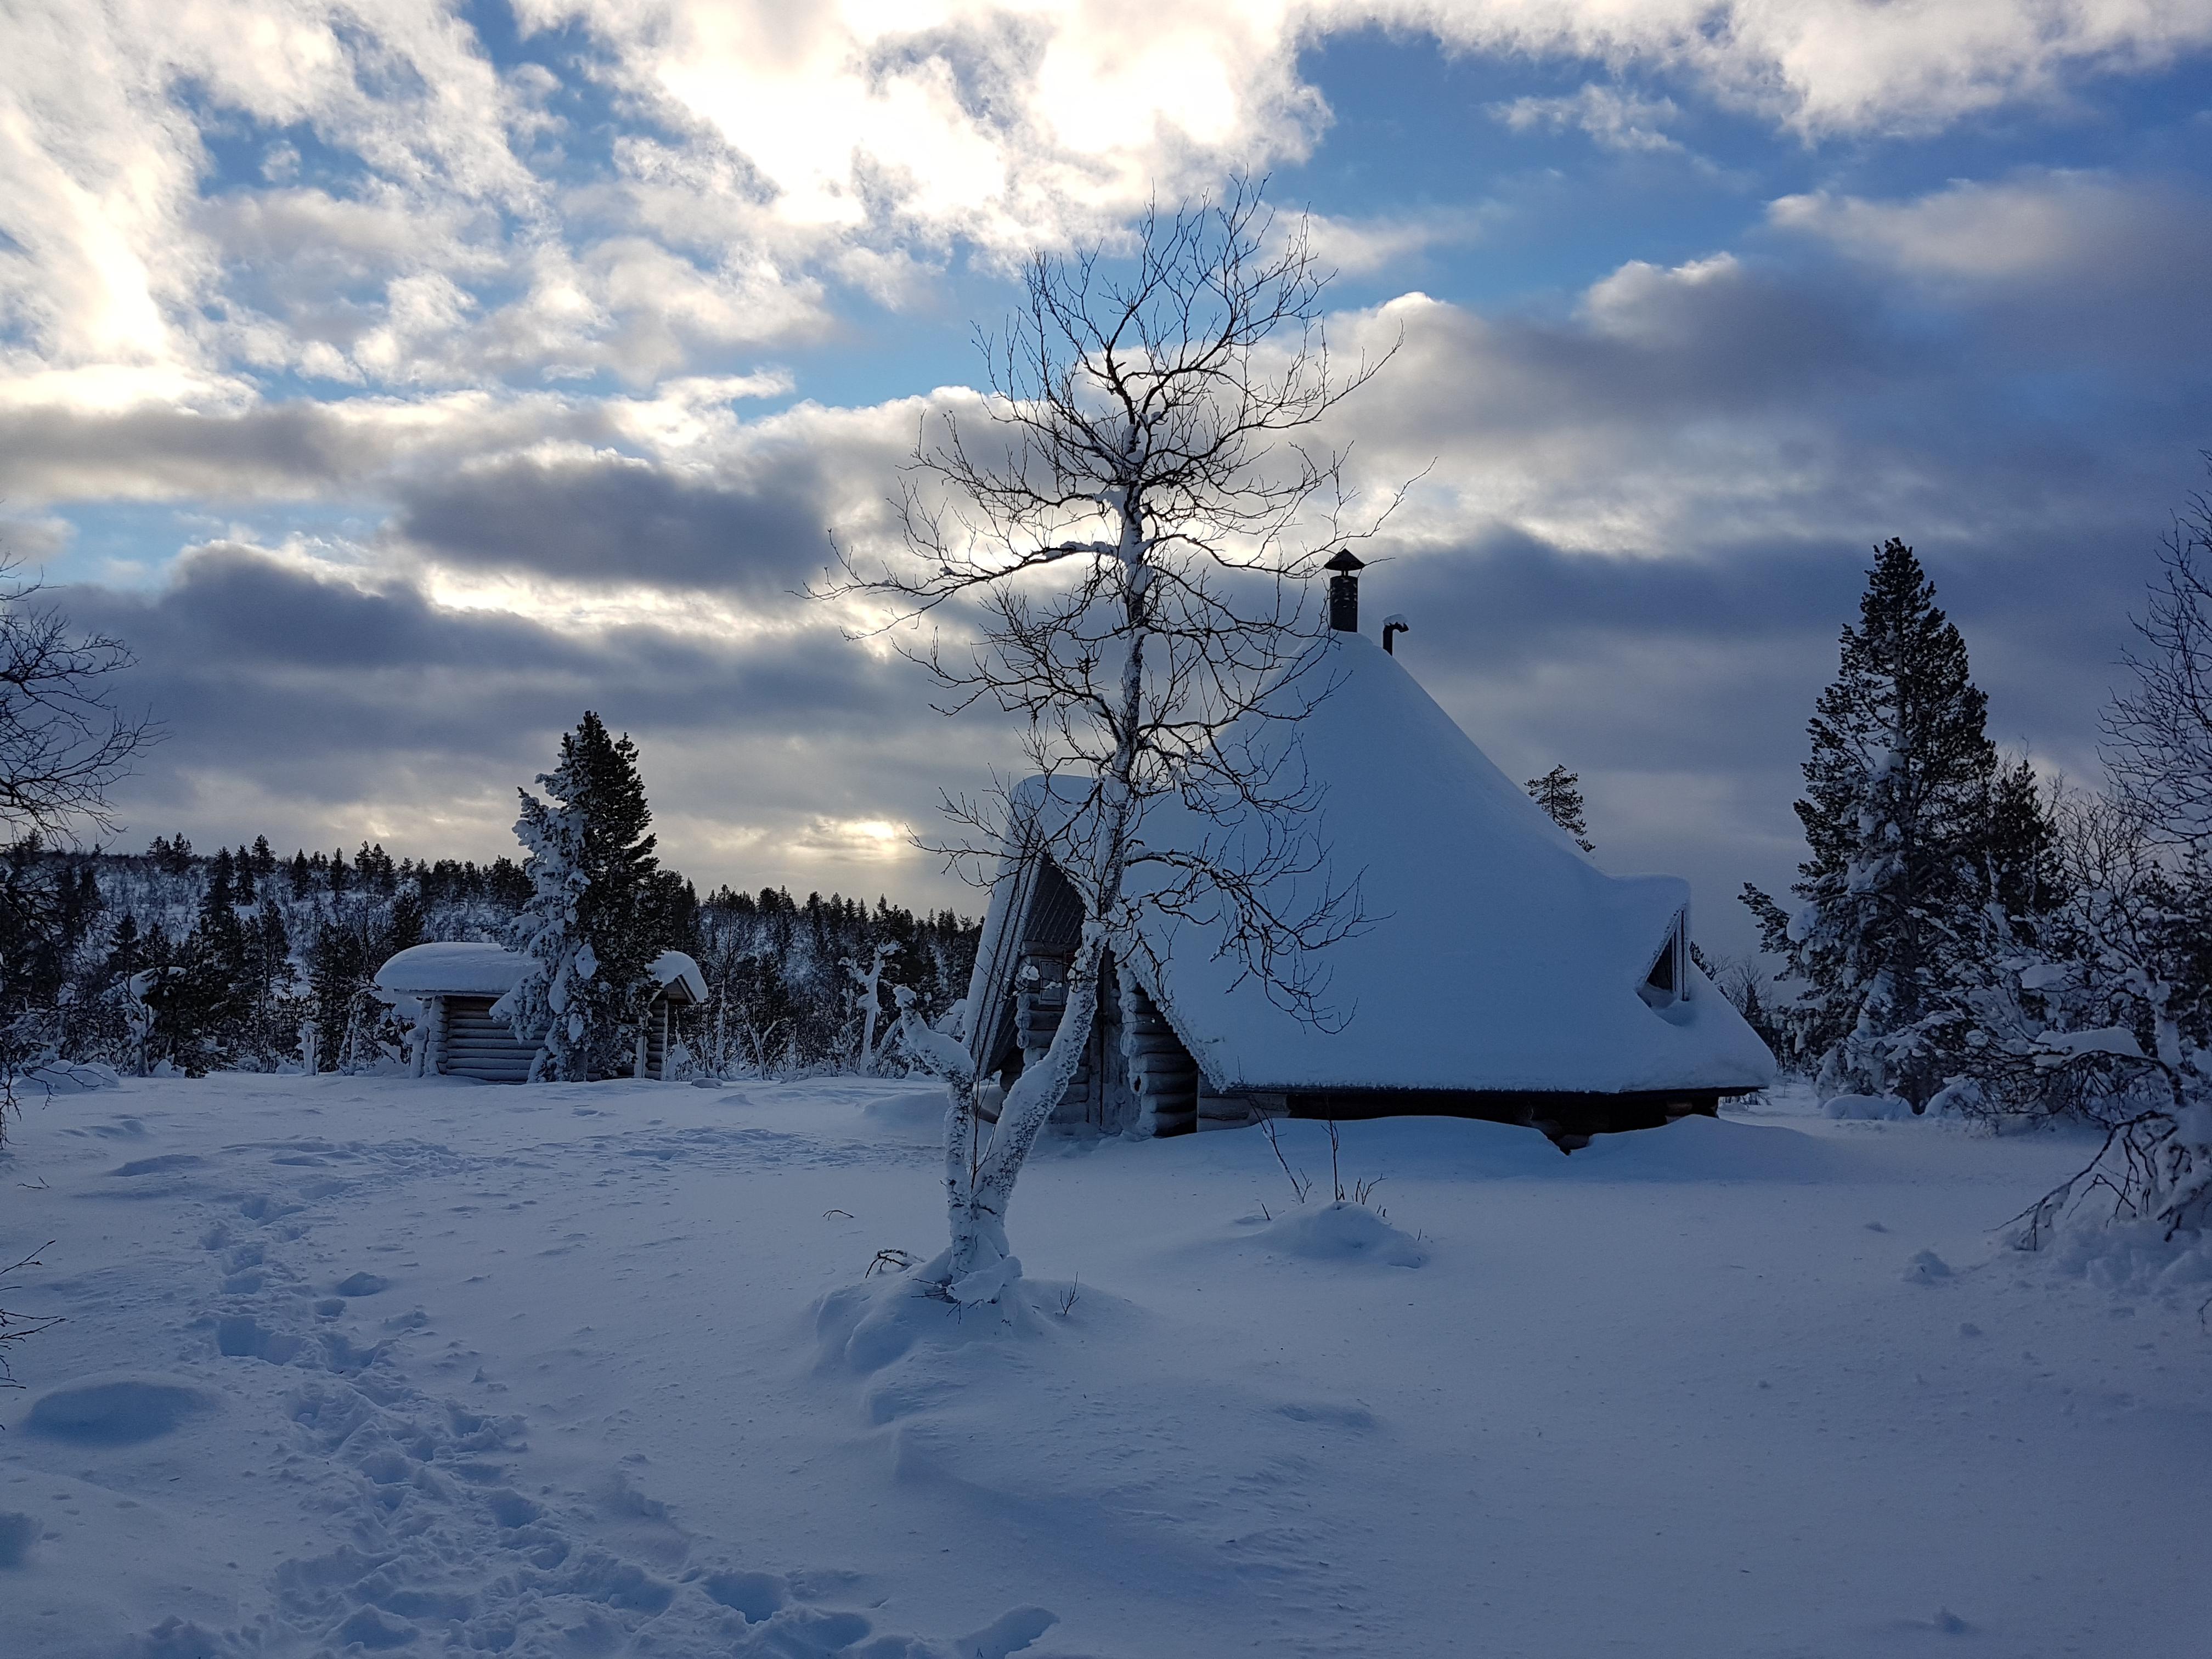 Voyage sur-mesure, De retour de Laponie, nos clients nous racontent leur aventure !